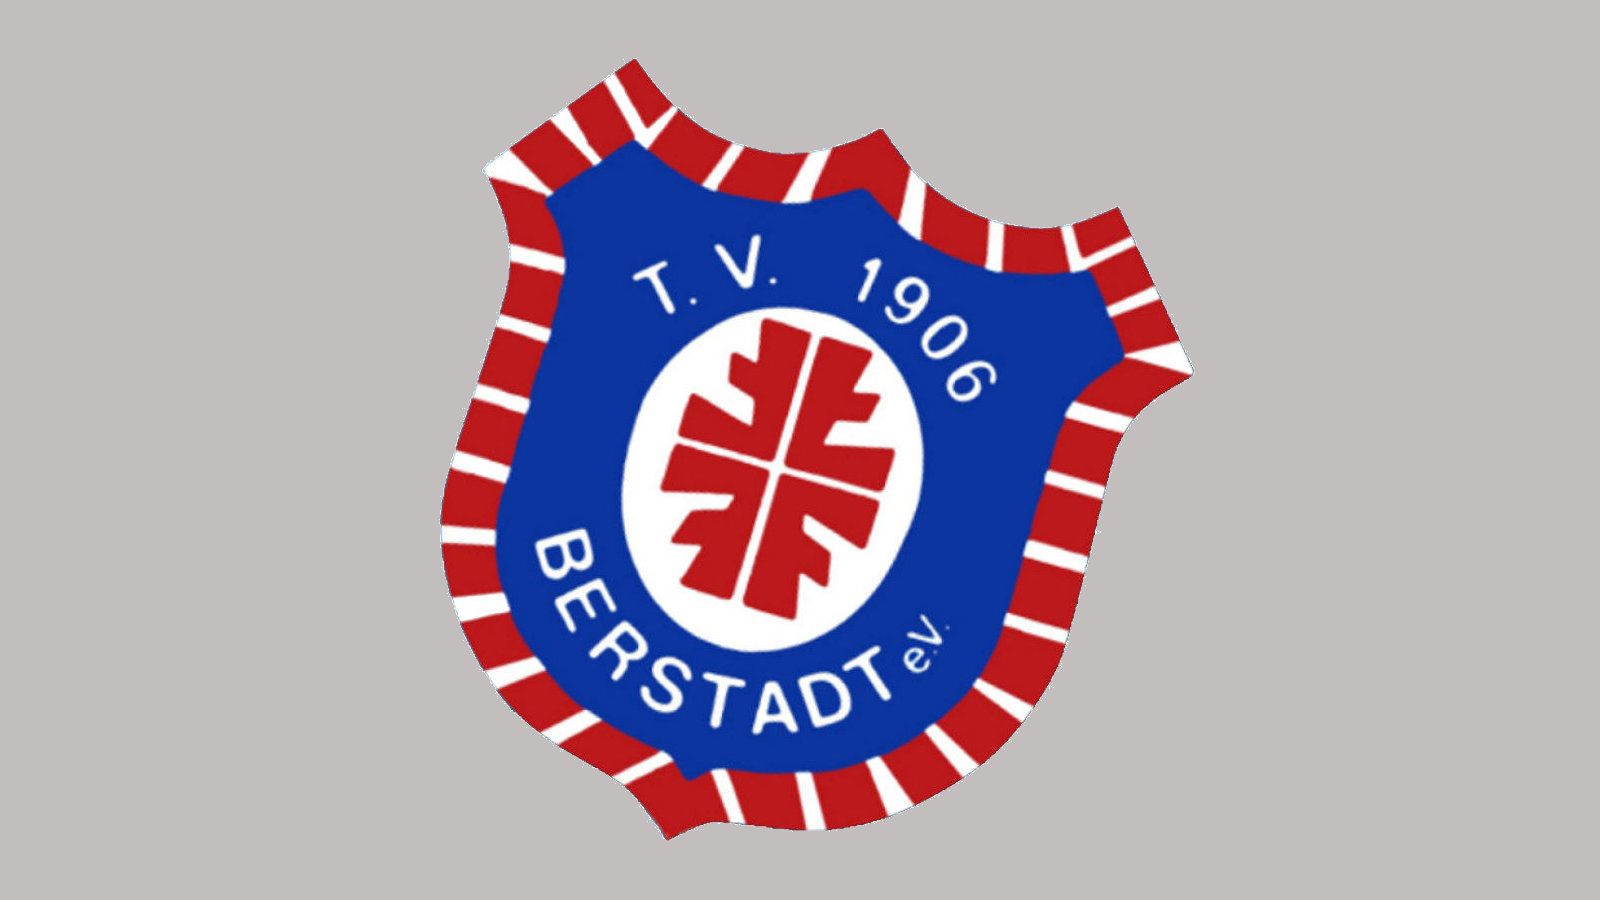 Turnverein 1906 Berstadt e.V.